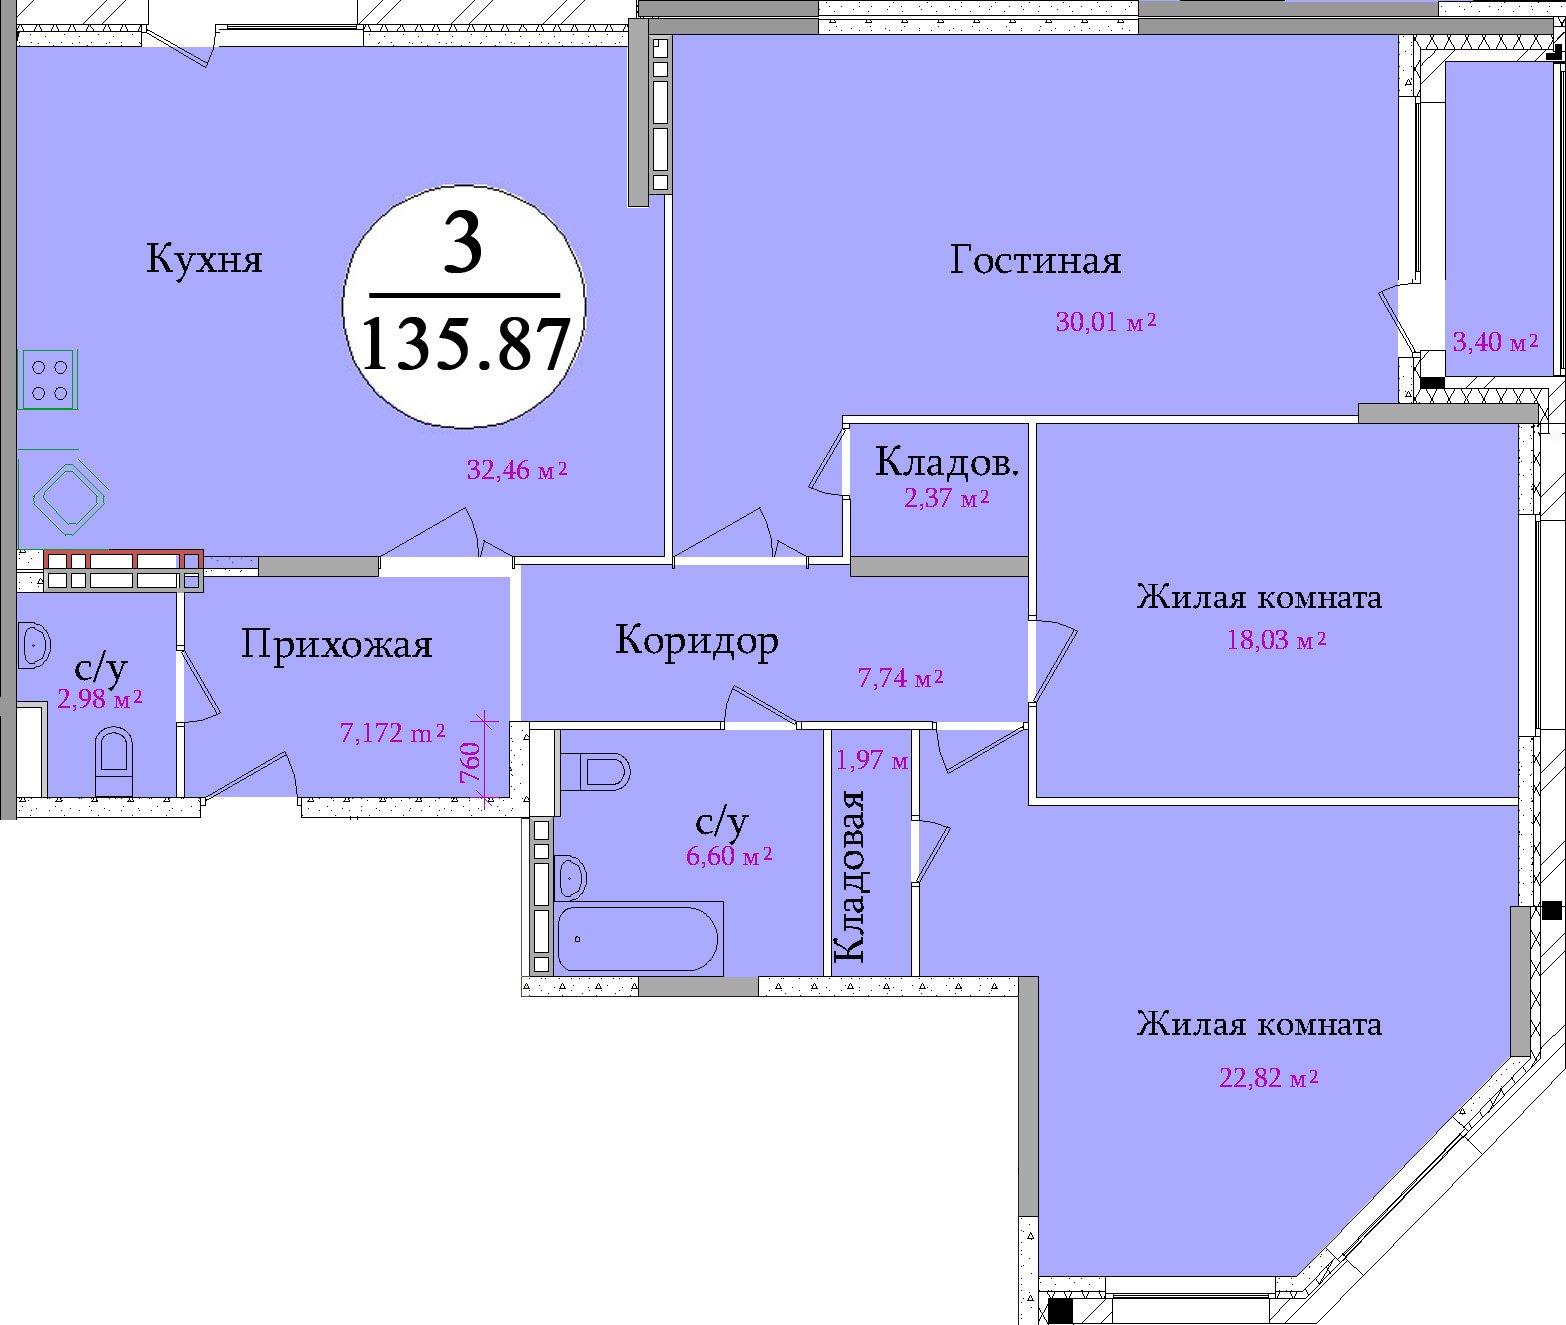 Планировка трехкомнатной квартиры площадью 135,87 м2 ЖК НА ПЕРВОМАЙСКОЙ по улице Первомайская в городе Туле